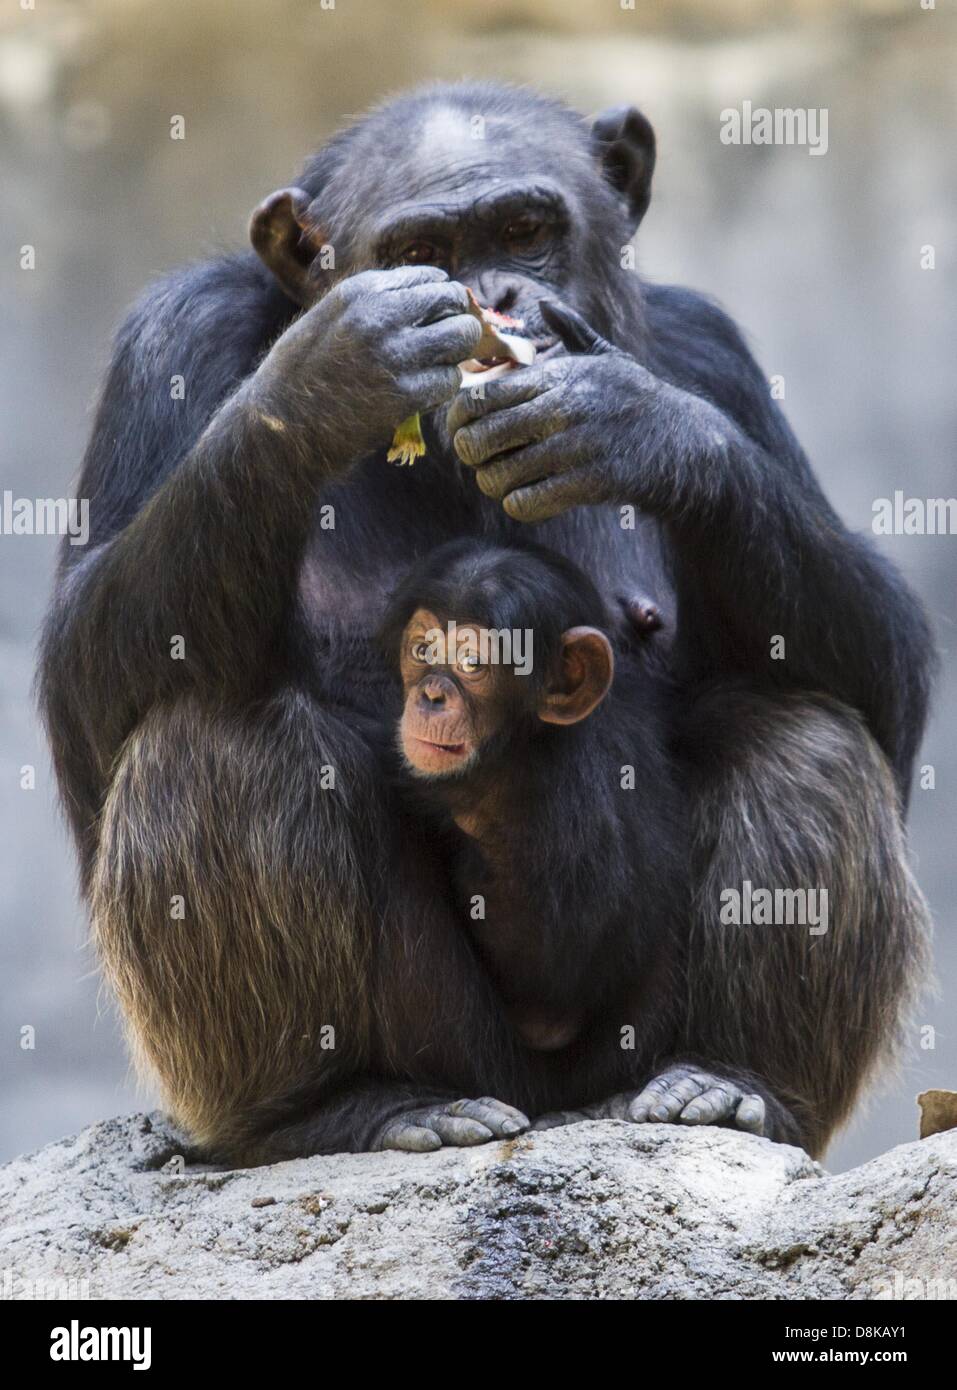 30 maggio 2013 - Los Angeles, California, Stati Uniti - madre di scimpanzé, Gracie mangia la banana con il suo bambino femmina,unnamed giovedì 30 maggio 2013 presso il scimpanzé di Monti Mahale presentano presso il Los Angeles Zoo. Negli ultimi dieci mesi, il L.A. Giardino zoologico ha avuto tre baby scimpanzé nato. Il primo denominato Zuri è nato a Madre Regina sulla luglio 23, 2012. Il 8 marzo 2013, Yoshi ha dato nascita a Uki ed infine il 22 aprile 2013, Gracie ha dato i natali a un ancora, unnamed neonato. Tutti e tre i ragazzi sono femmine. Foto Stock